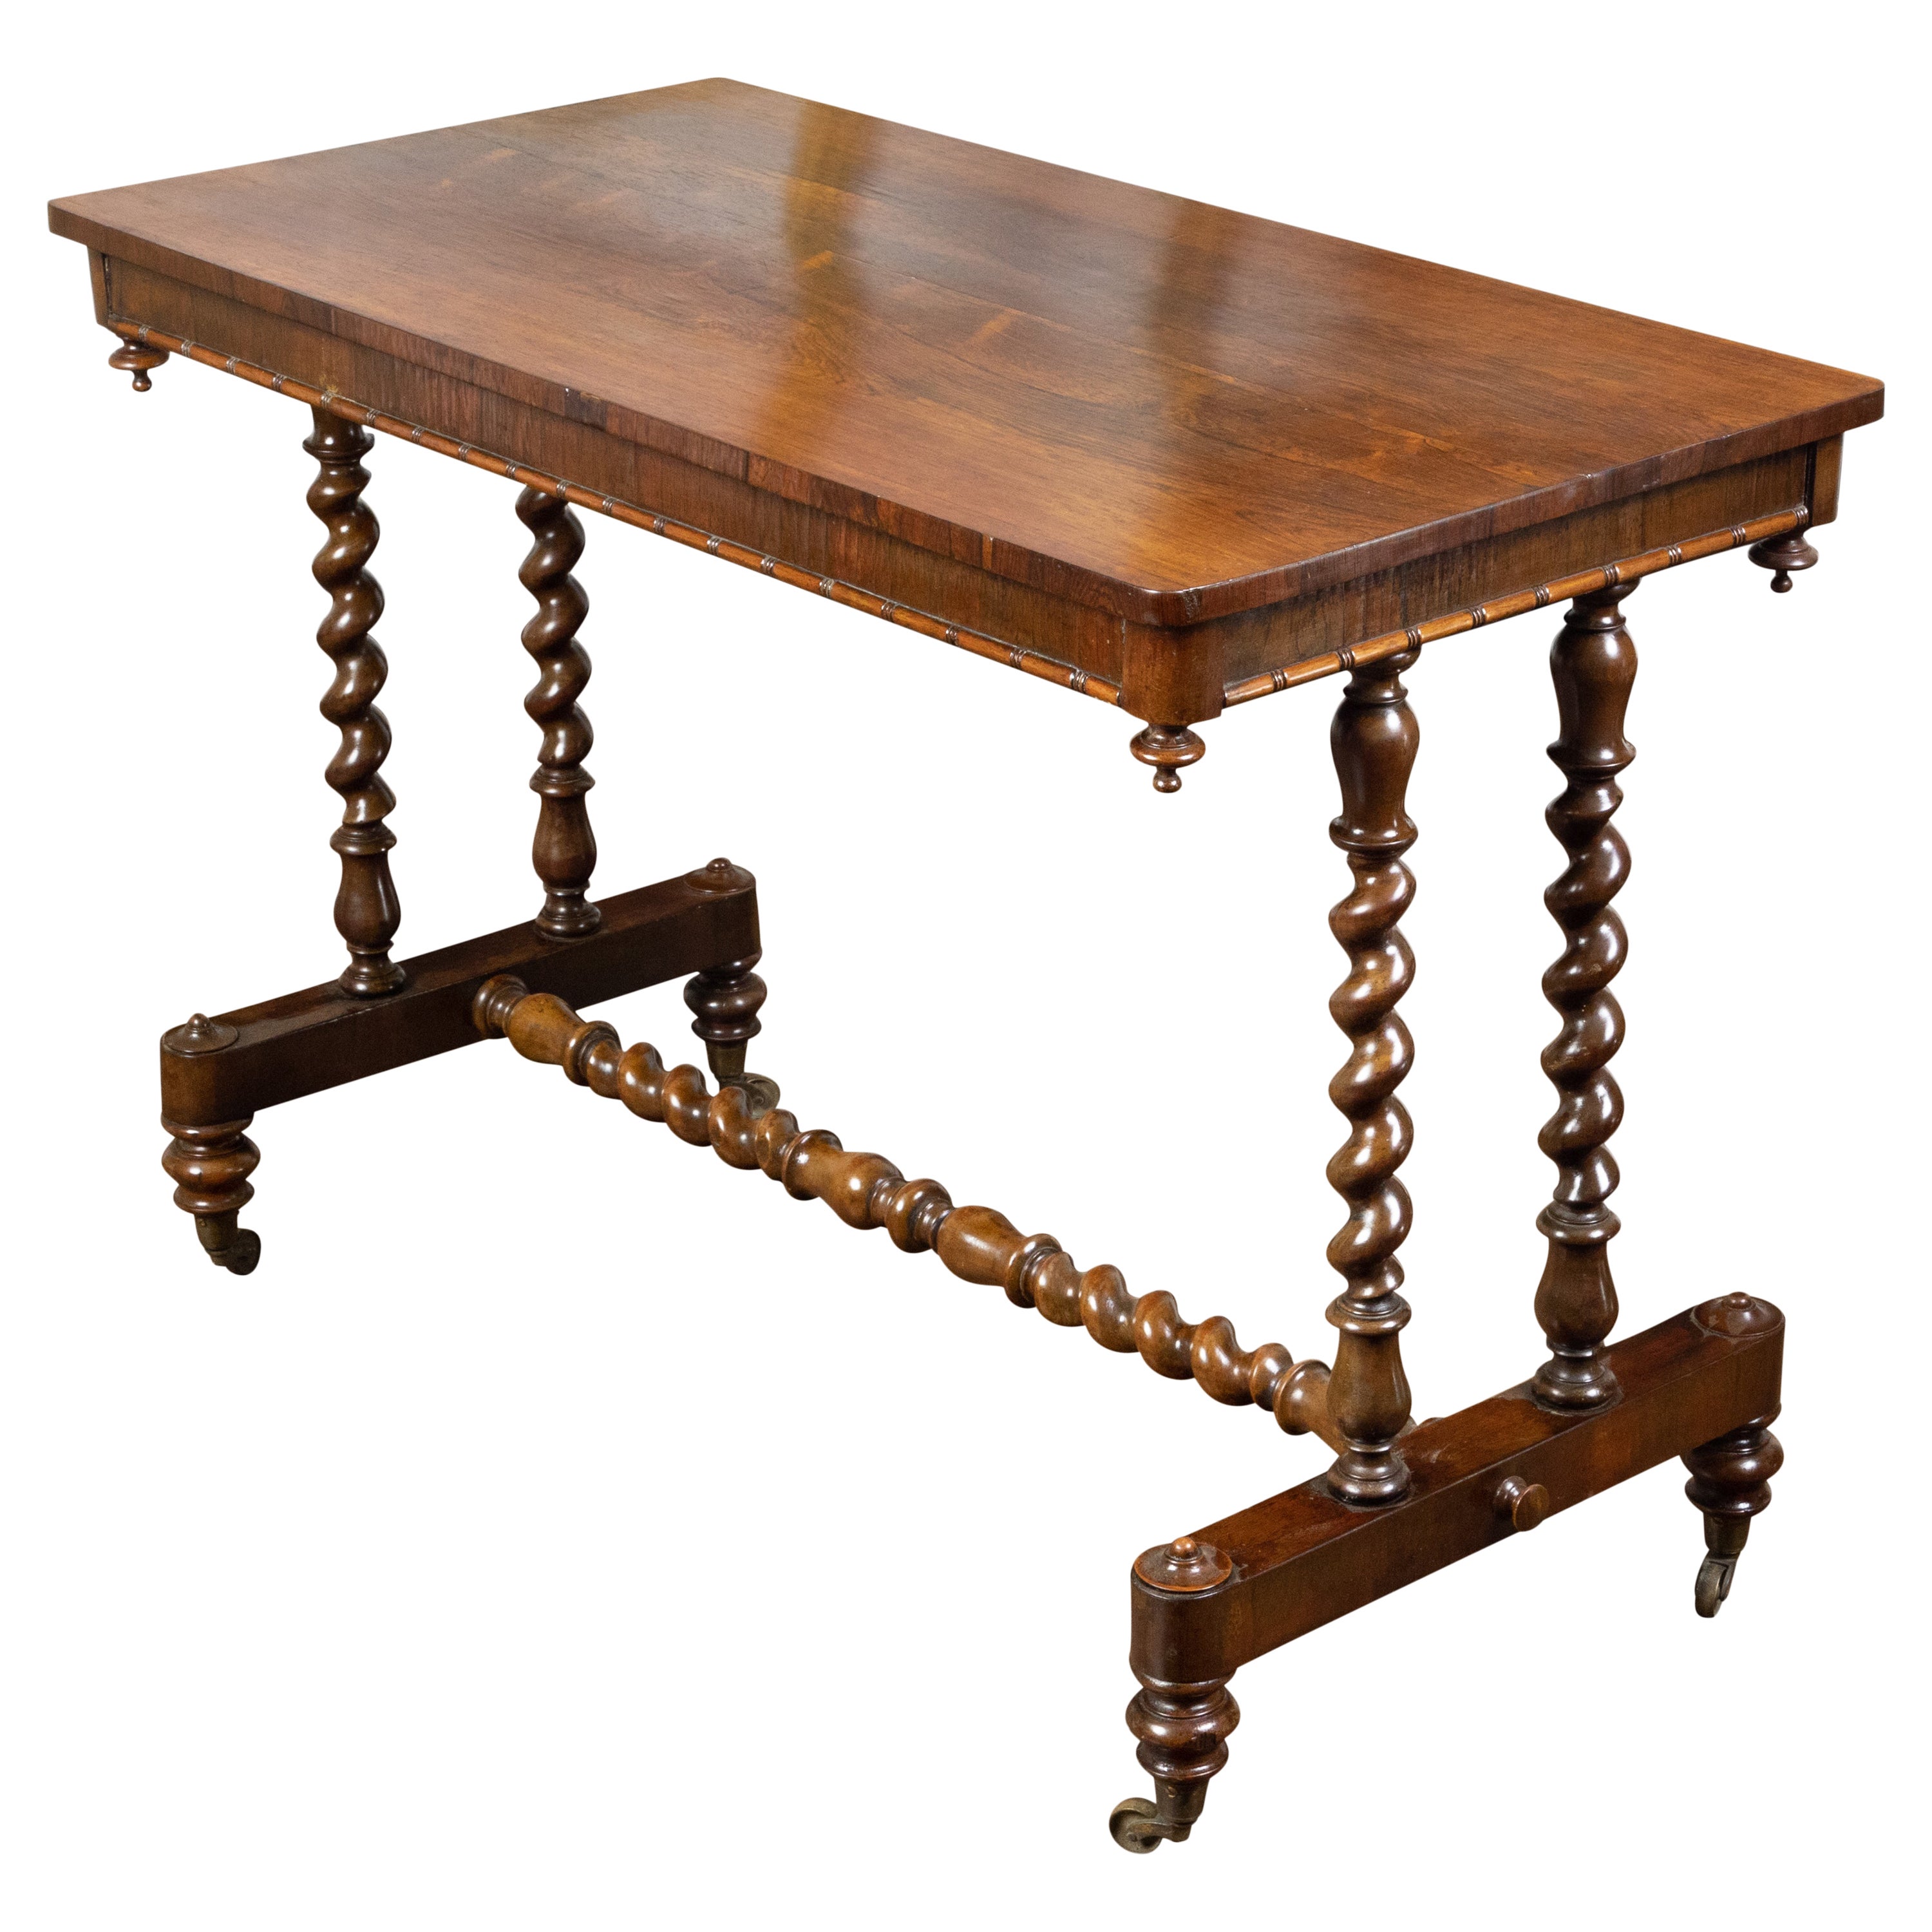 Englischer Mahagoni-Tisch aus den 1860er Jahren mit gedrechseltem Sockel und kleinen Rollen